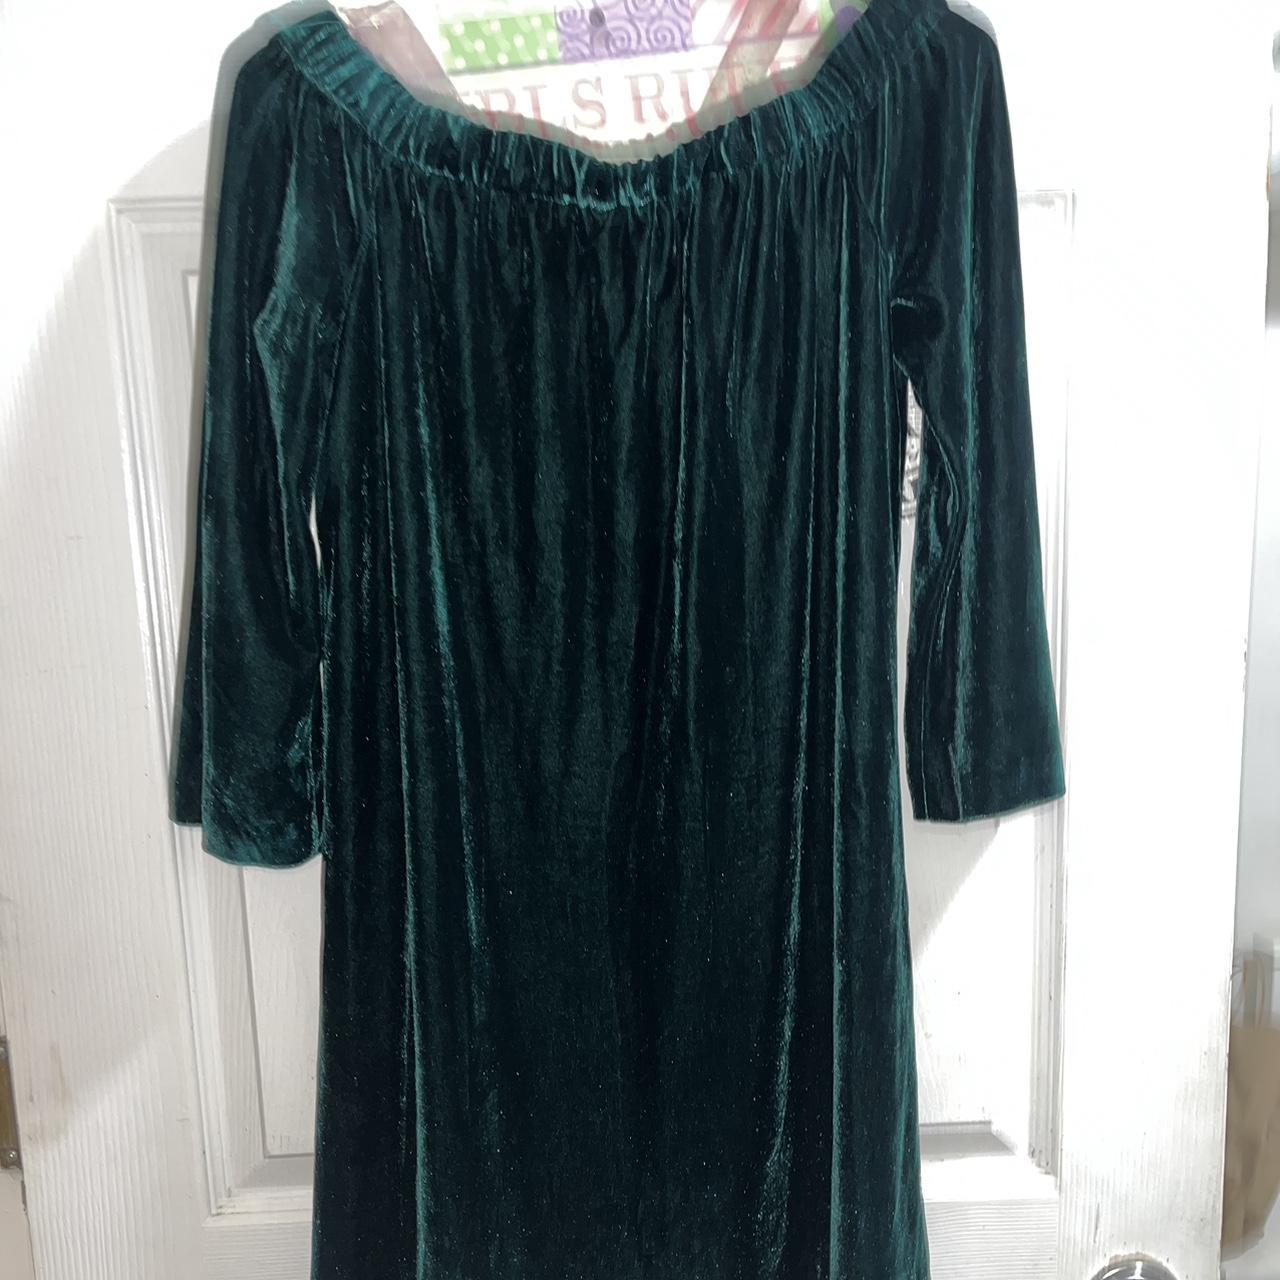 Product Image 3 - Green Velvet Off-Shoulder Dress
Brand: Donna